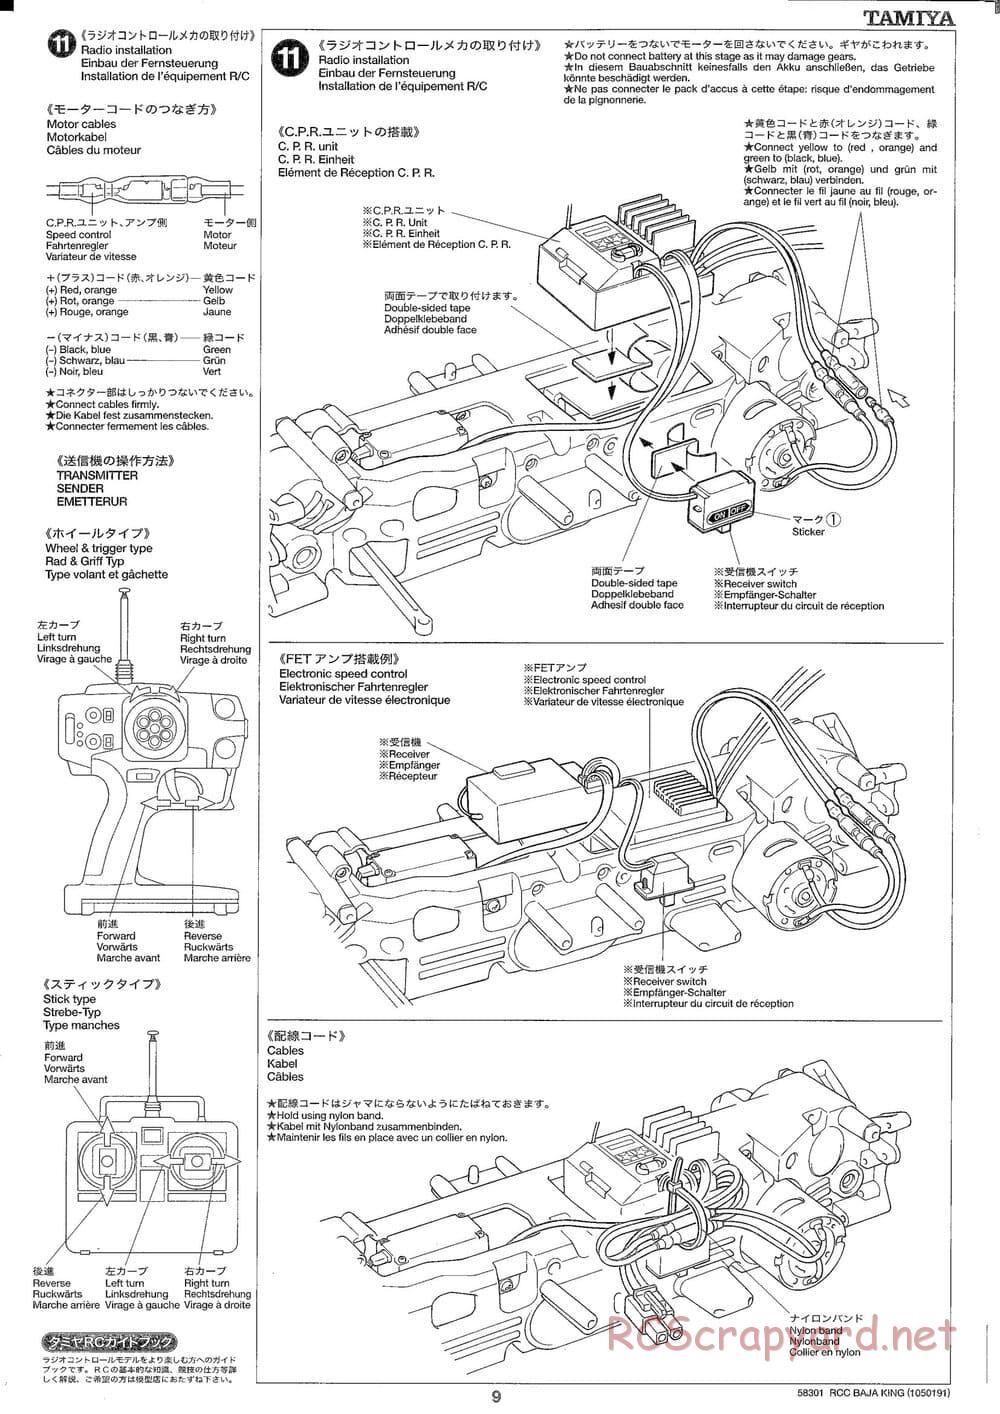 Tamiya - Baja King - TL-01B Chassis - Manual - Page 9